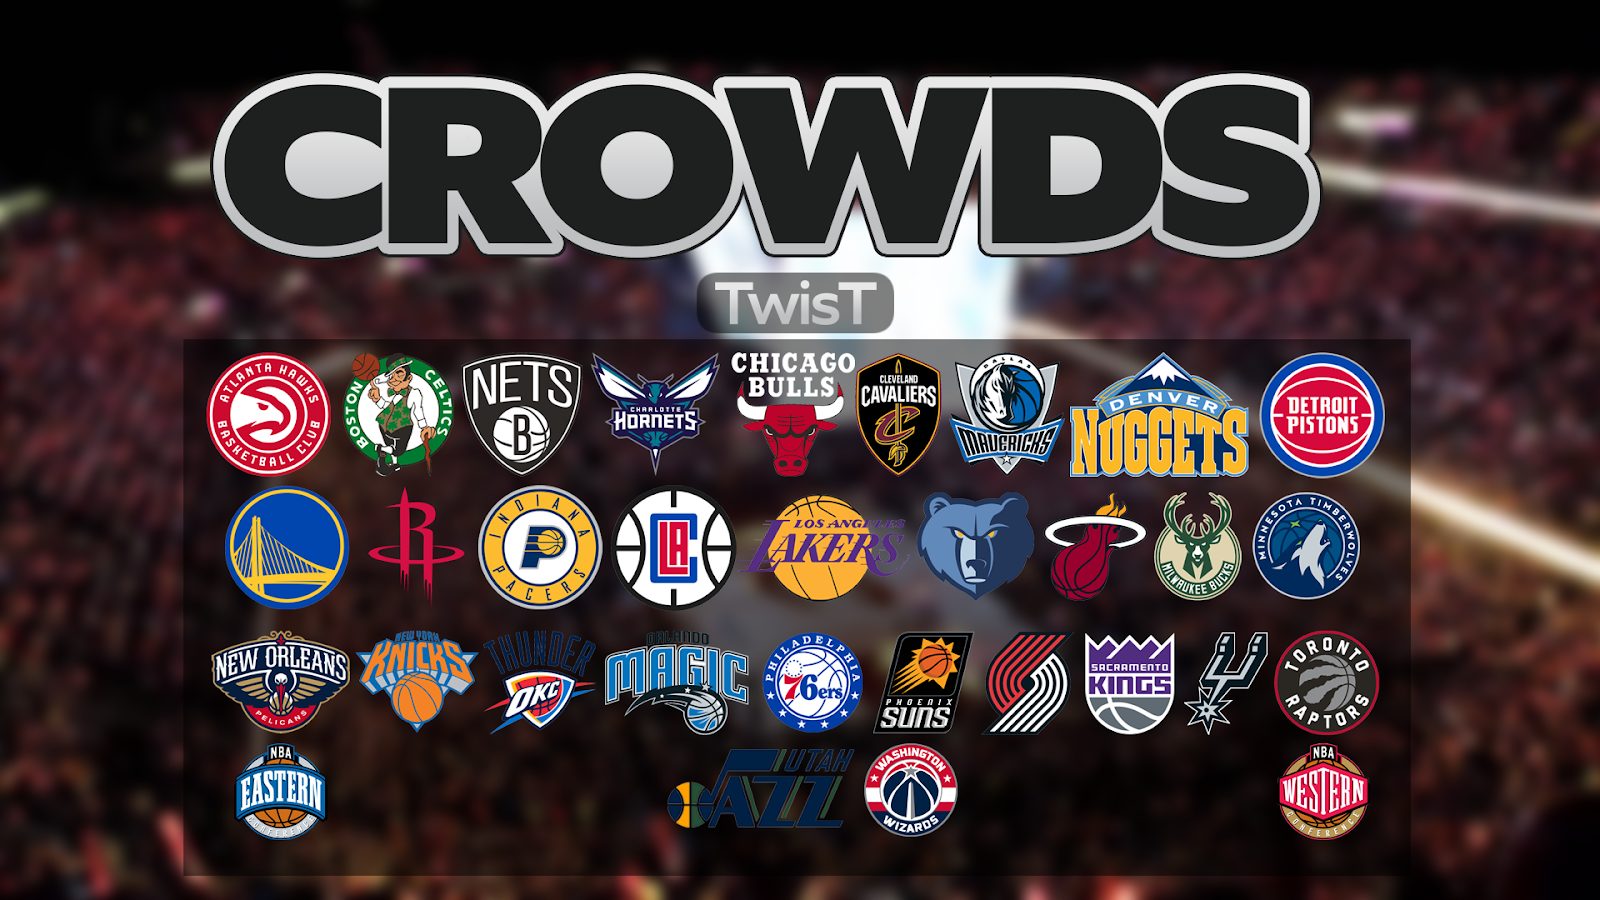 NBA 2K18 Crowds Update All 30 NBA Teams / Regular Season